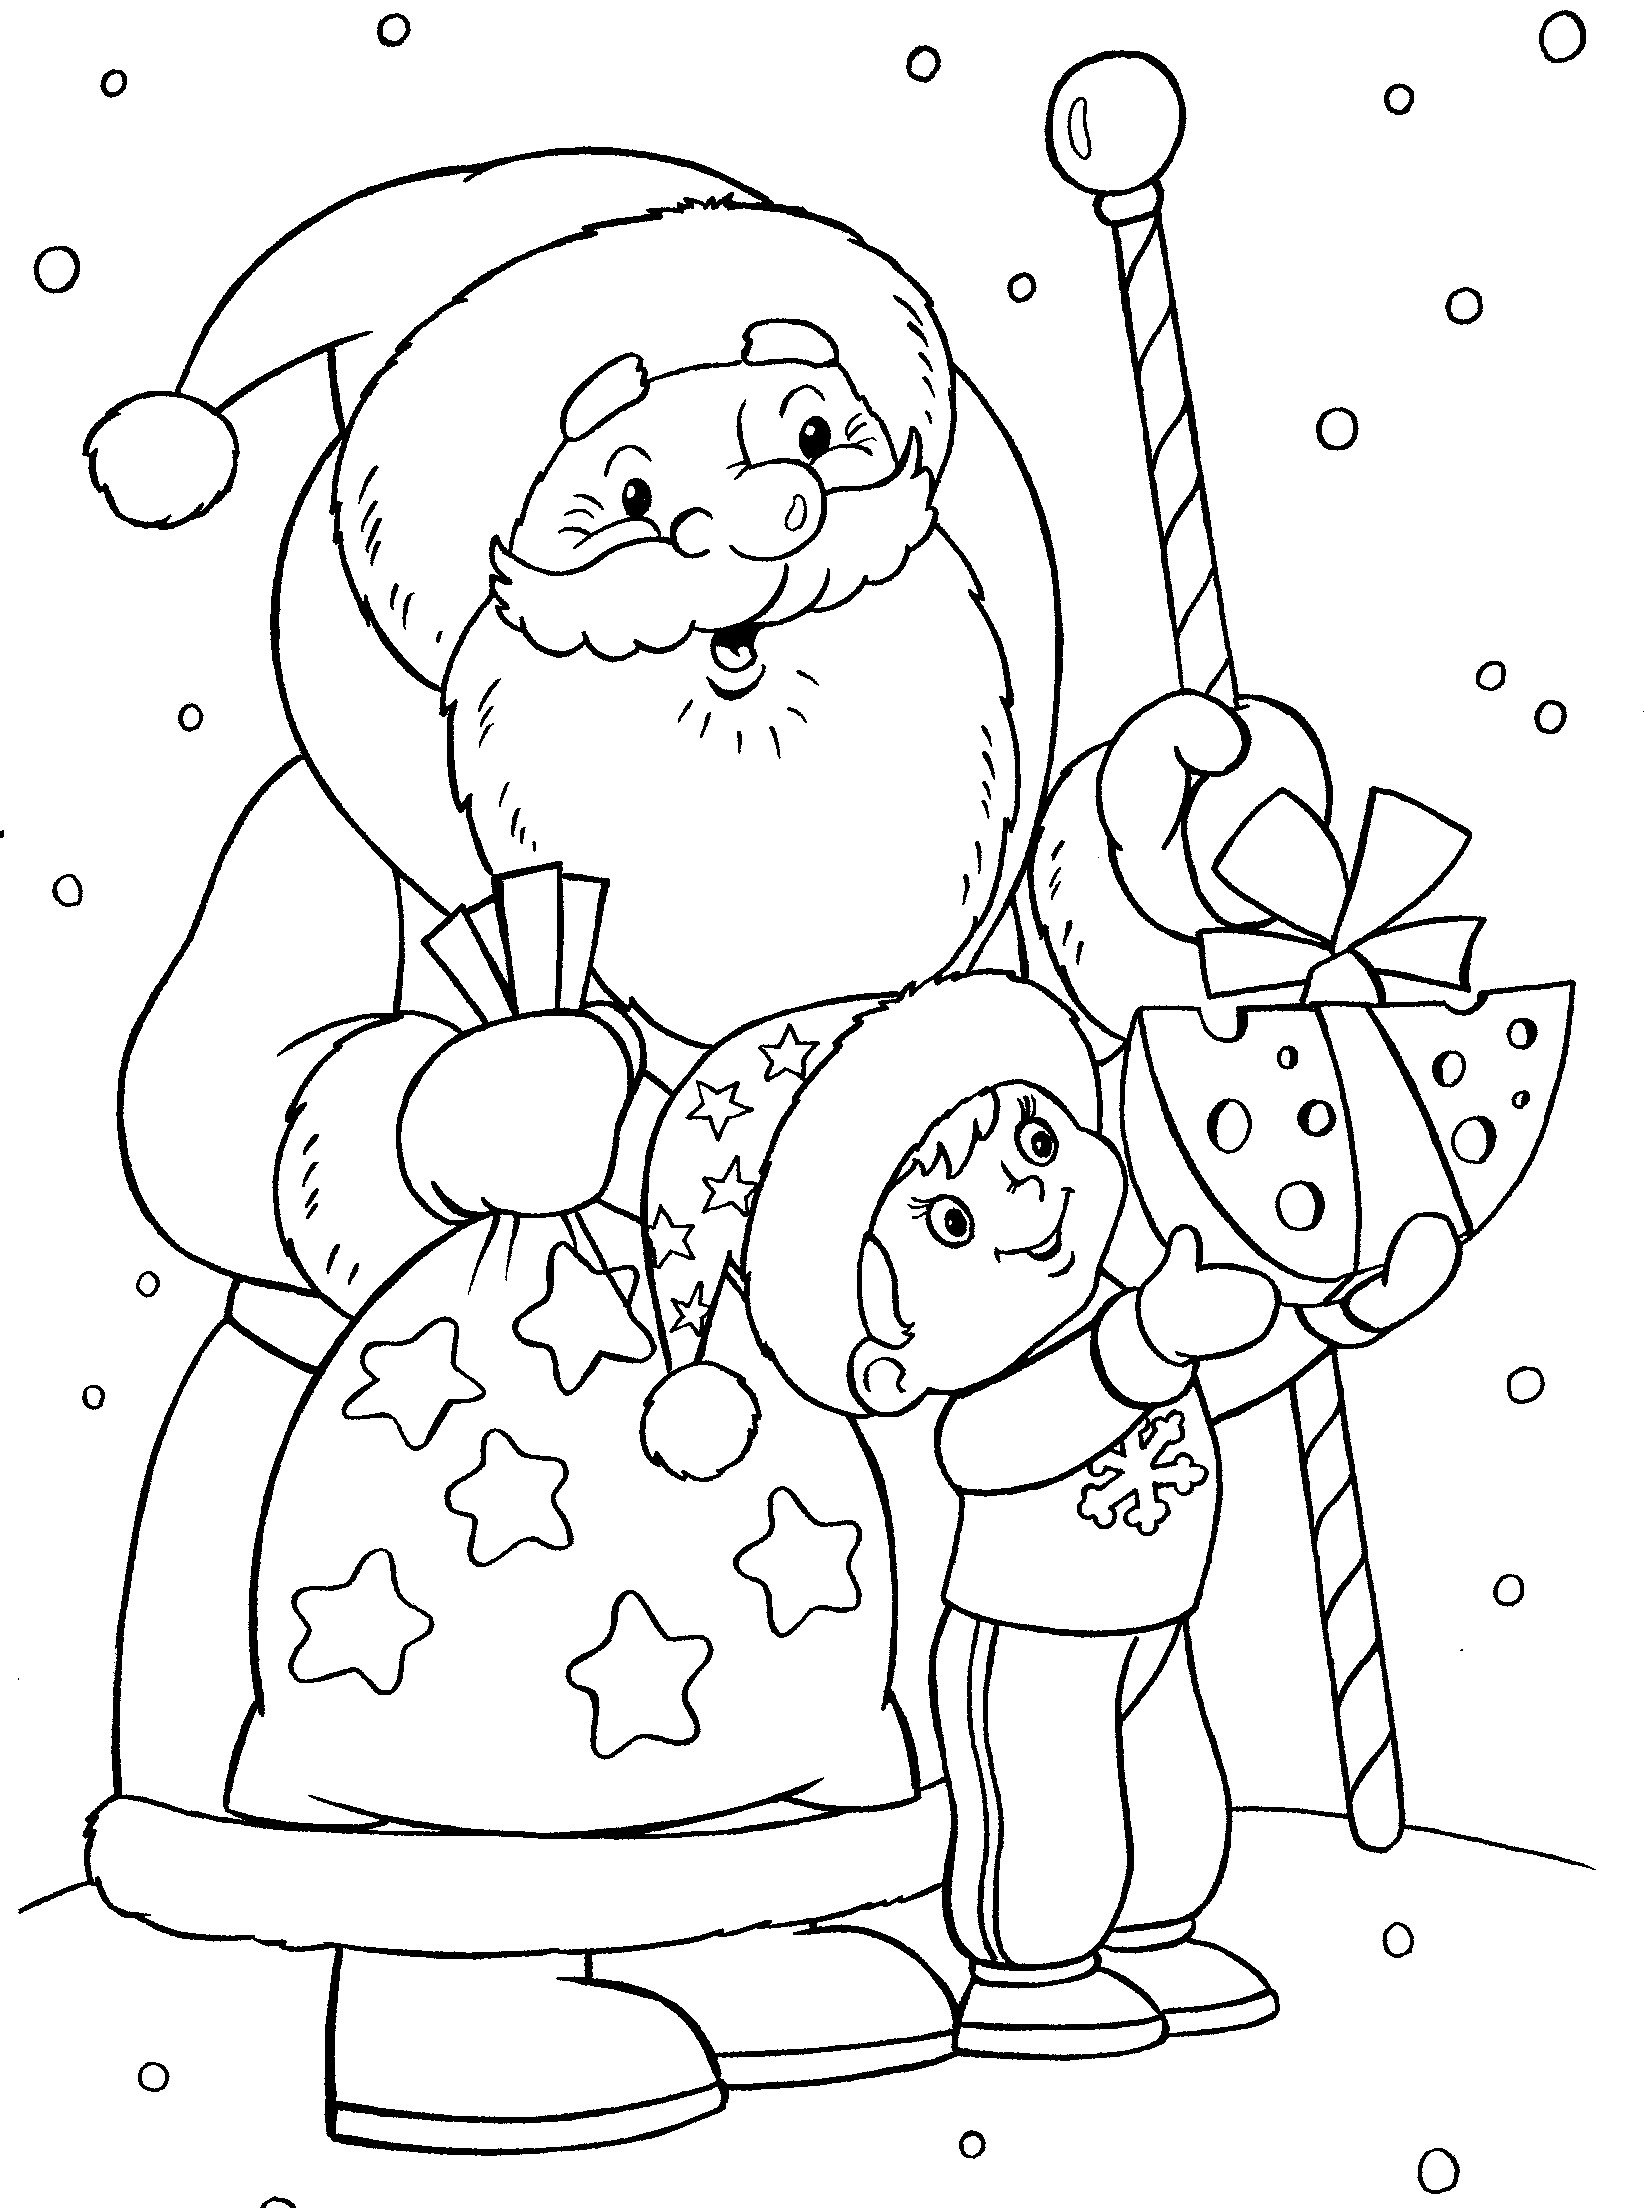 Раскраски Дед Мороз и Снегурочка (30+ раскрасок)